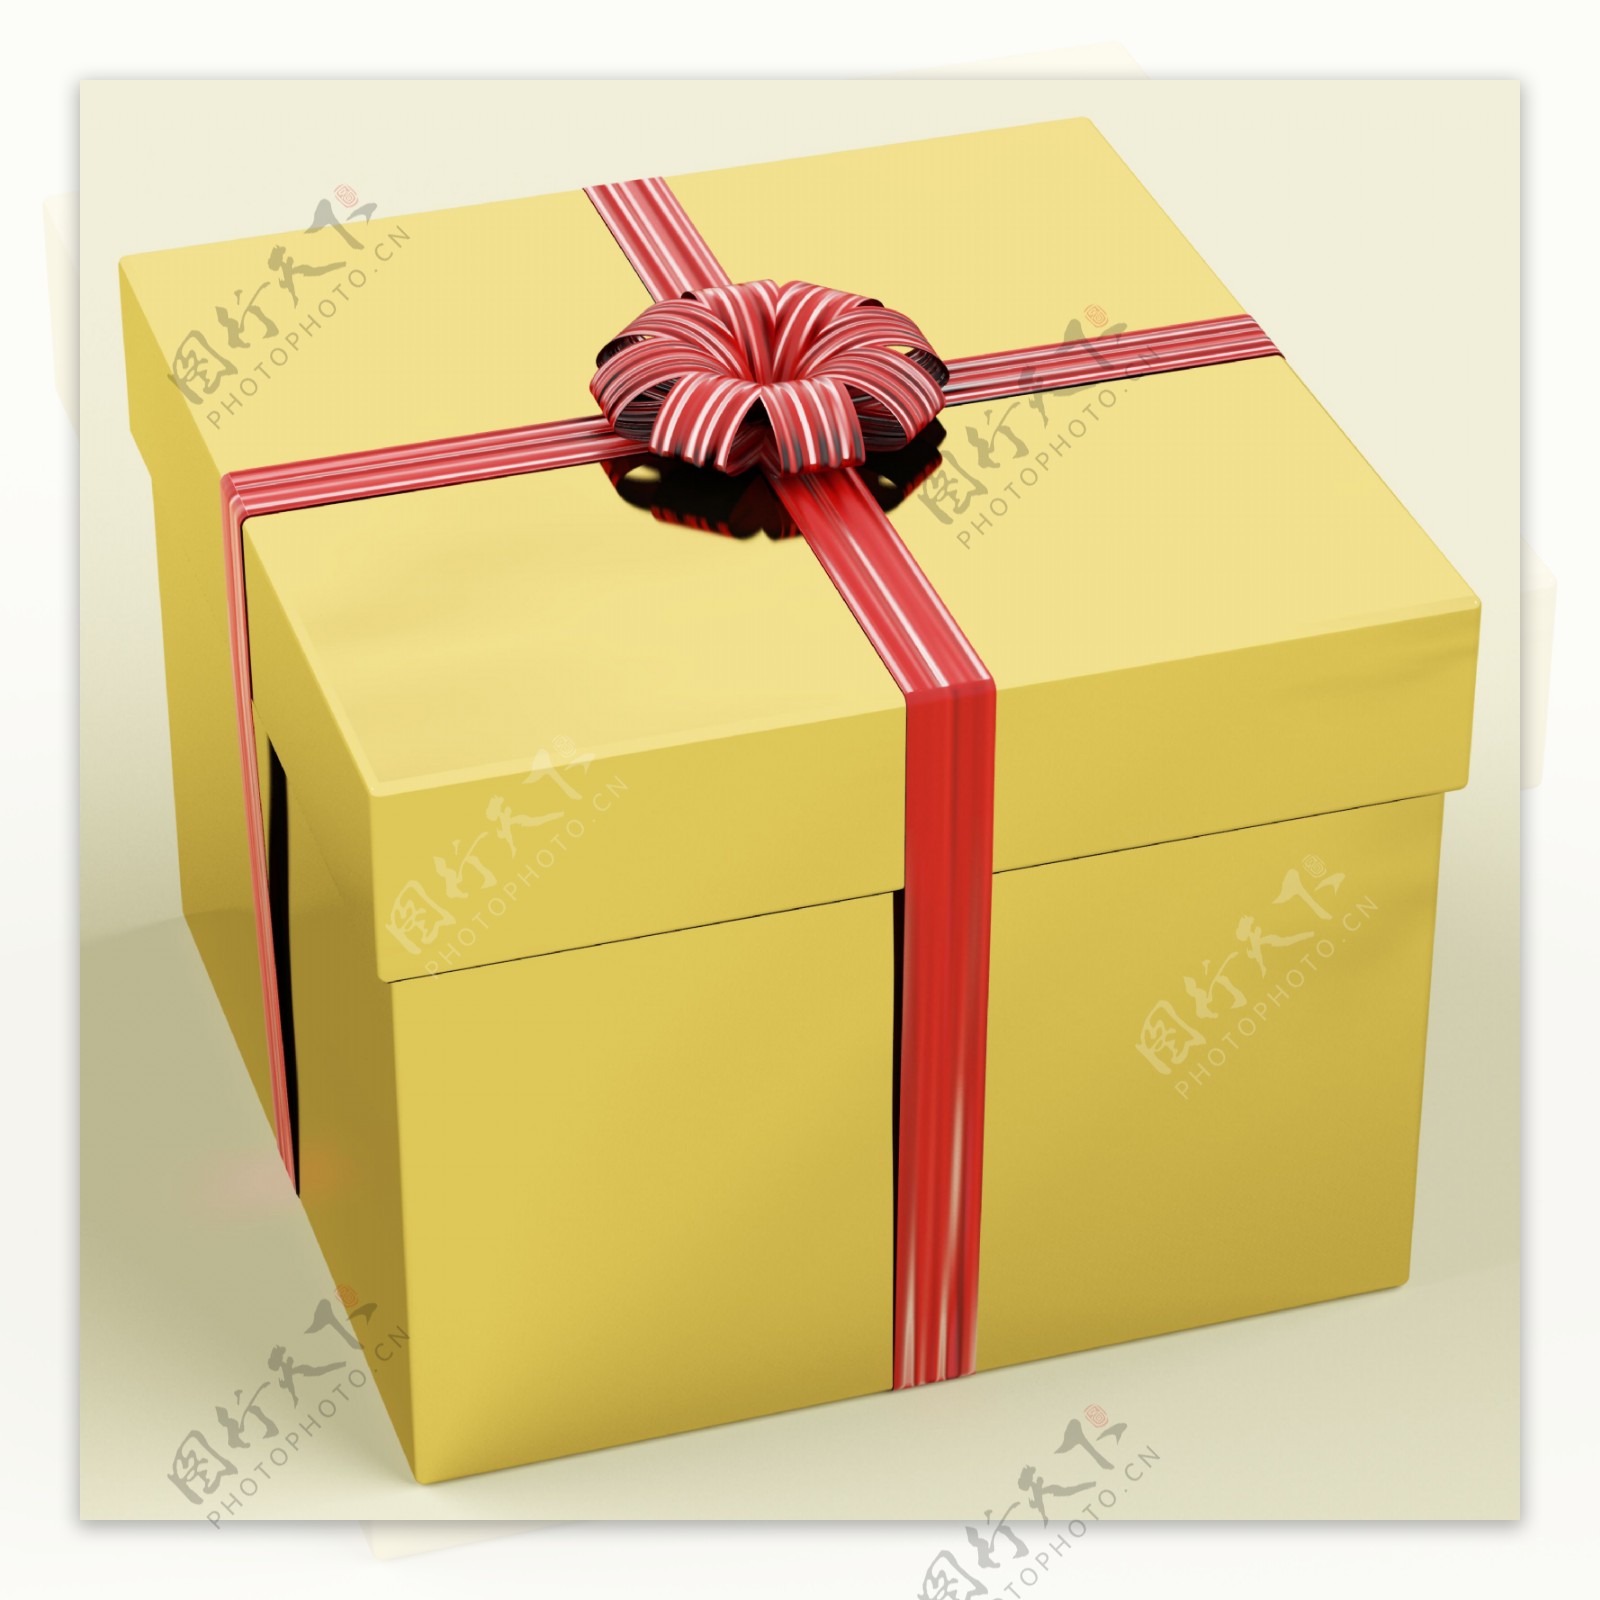 丝带作为生日礼物的黄金礼品盒